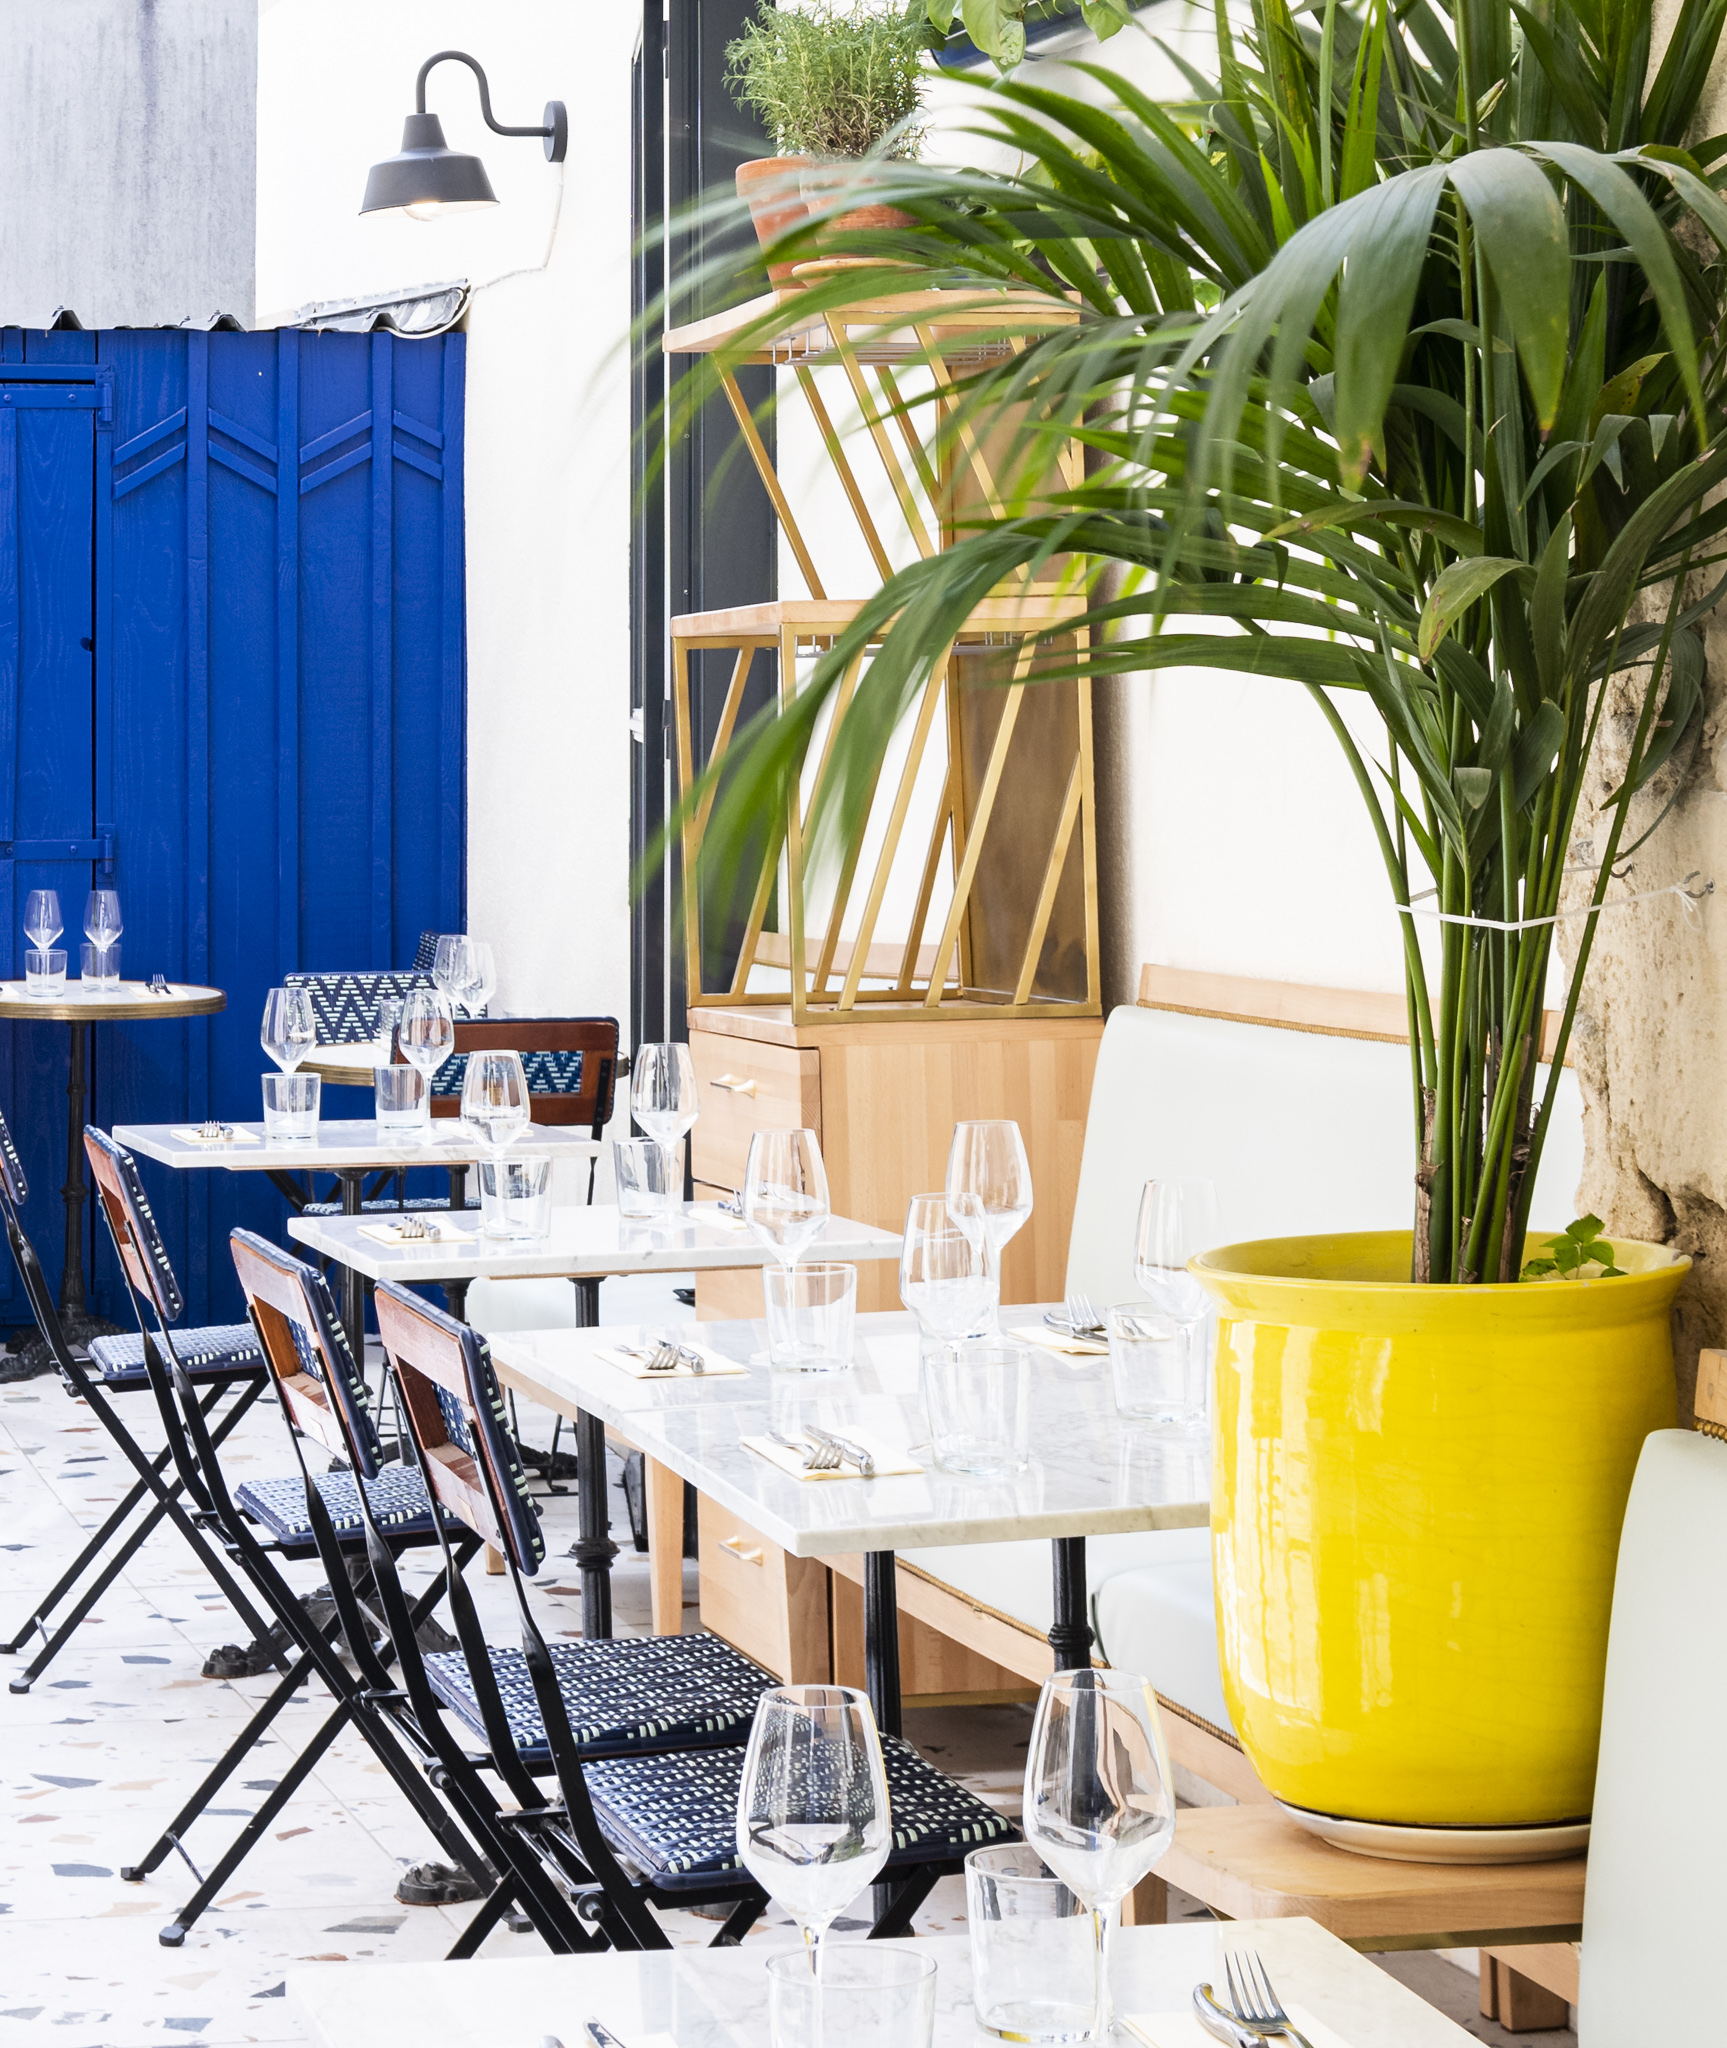 les tables dressées de la cour d'un restaurant avec une porte bleu à l'arrière